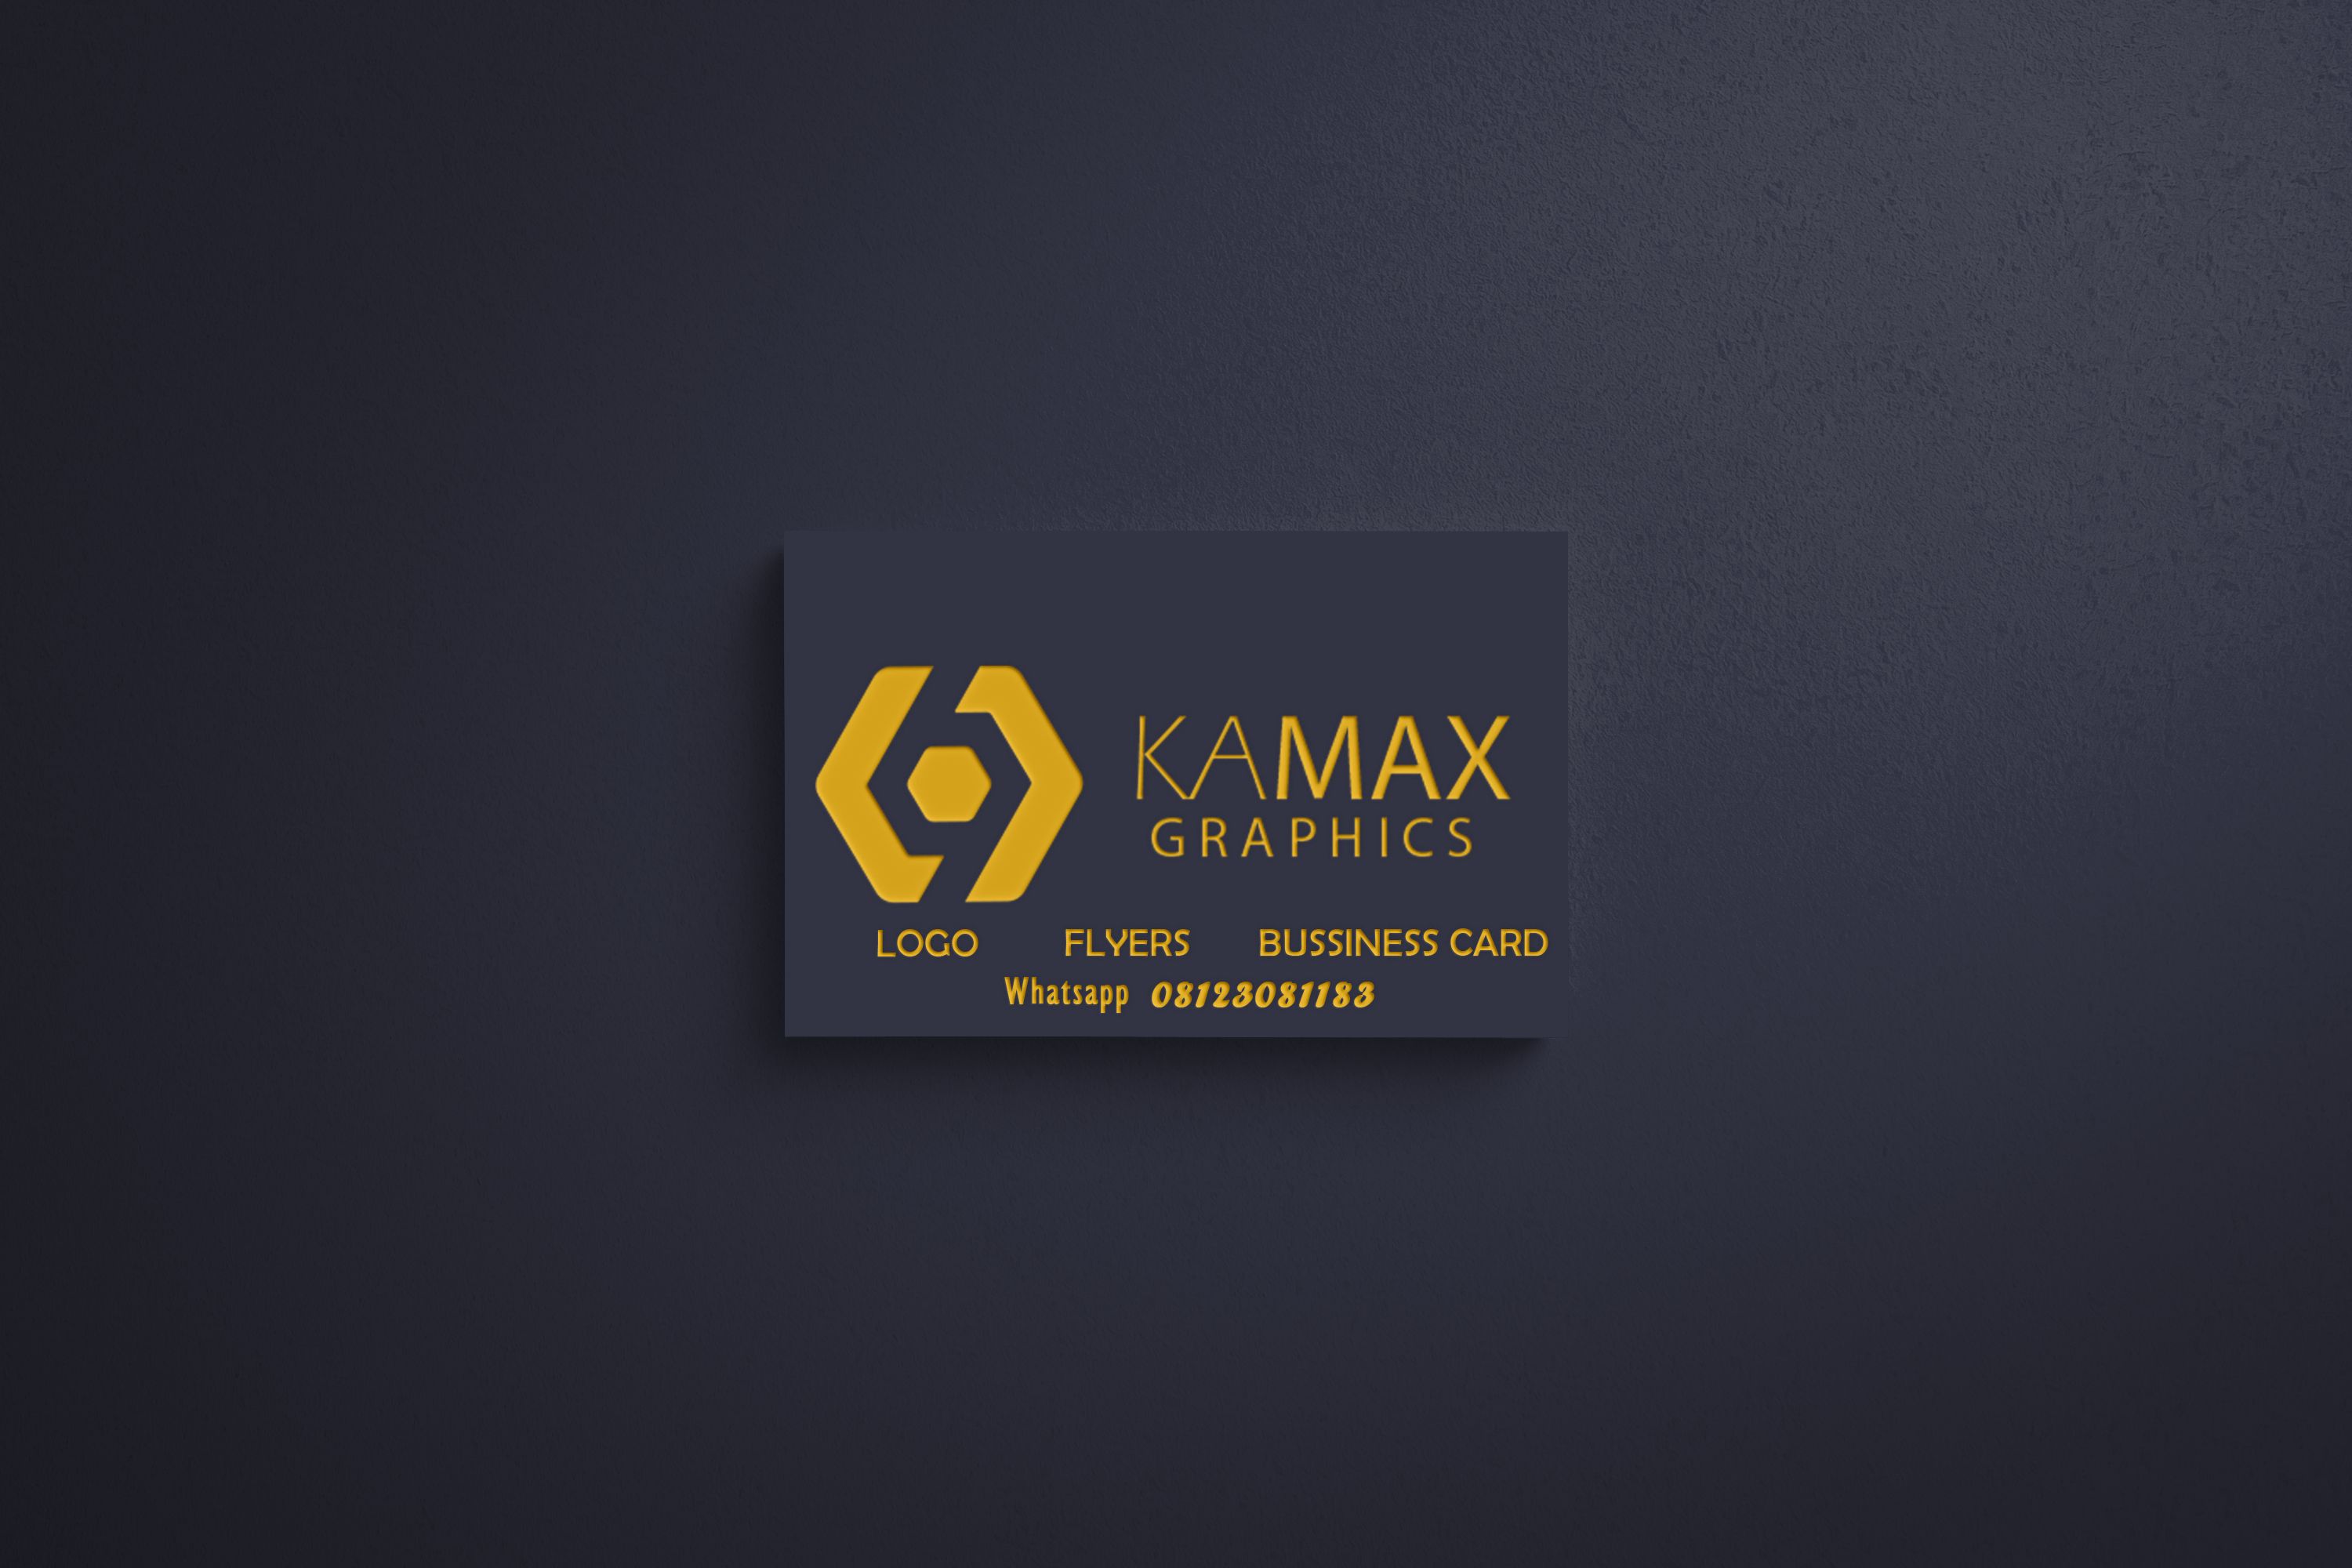 Kamax Graphics